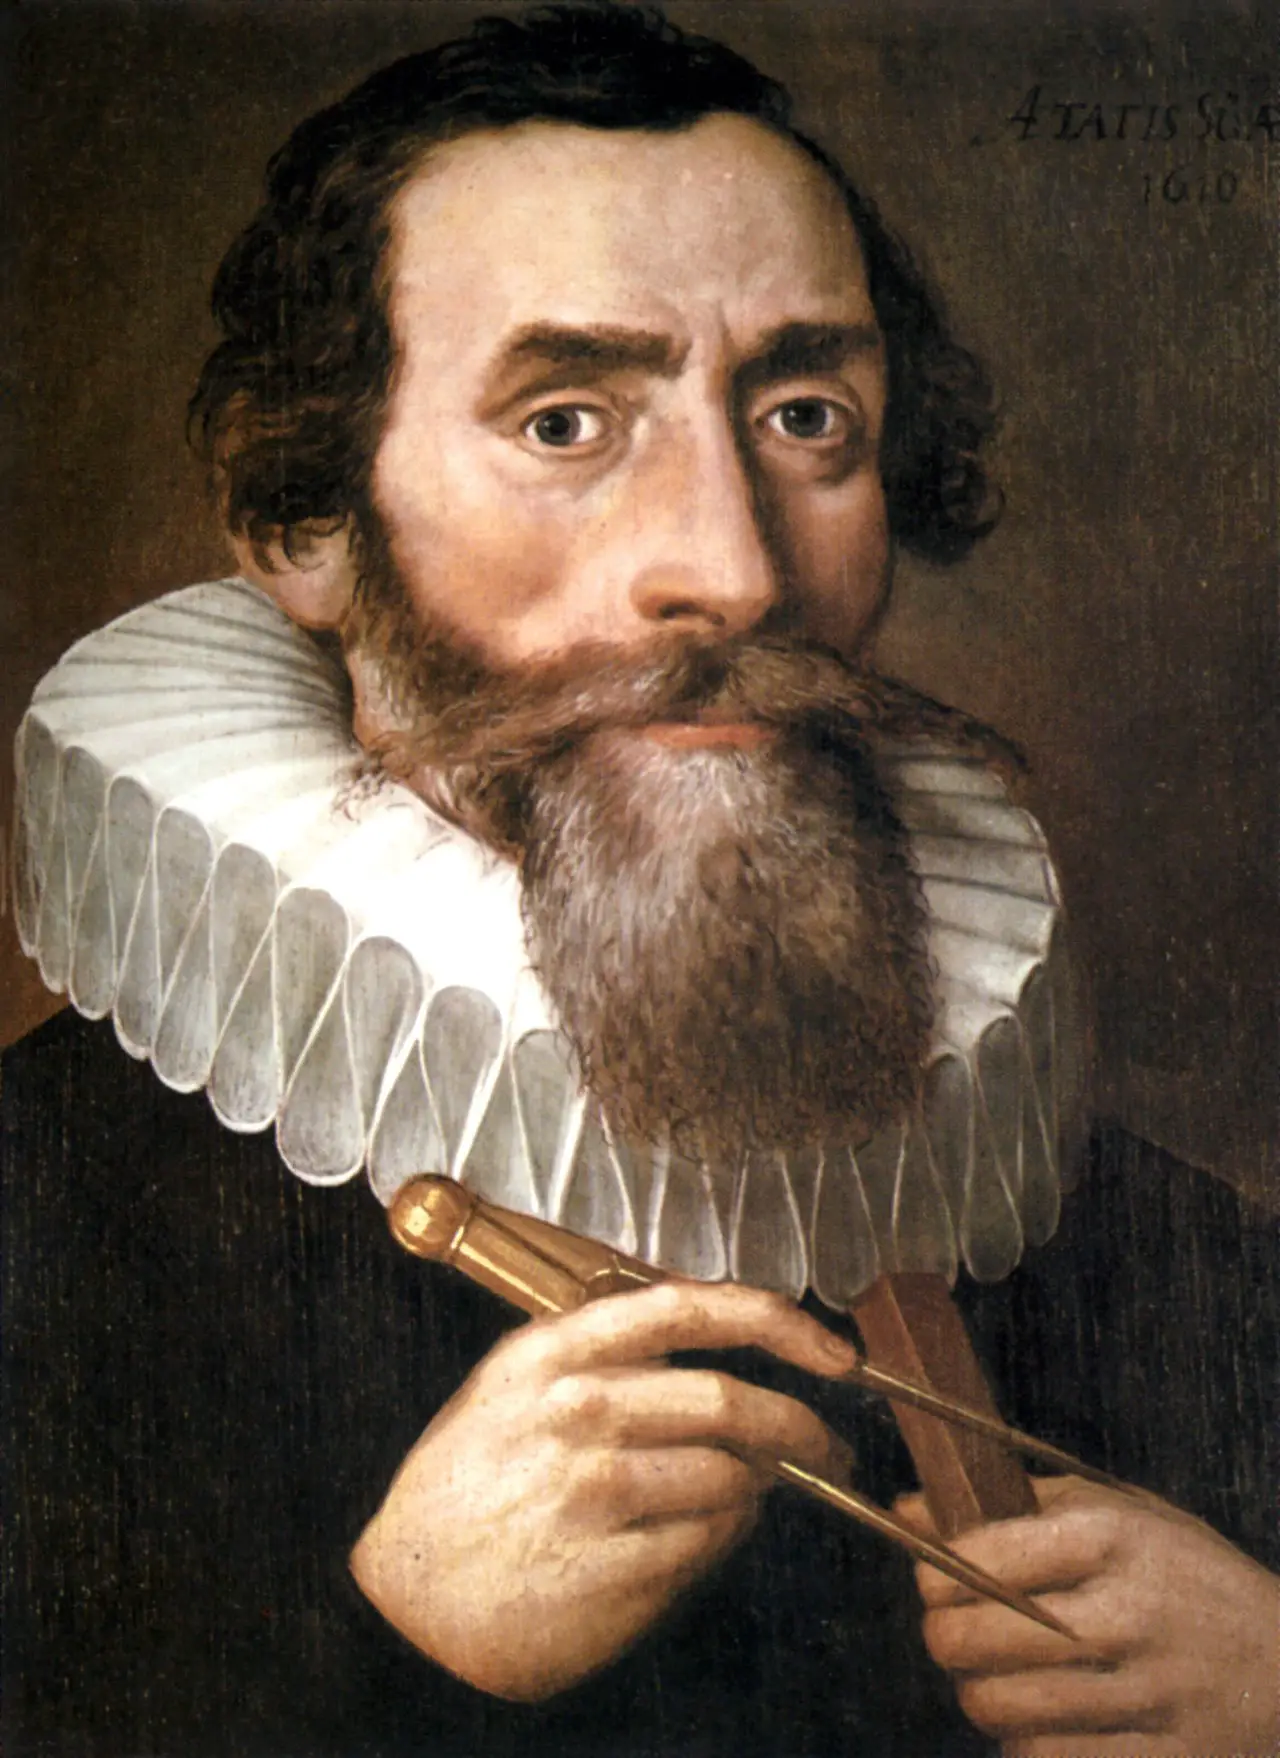 La vida del brillante matemático y astrofísico Johannes Kepler